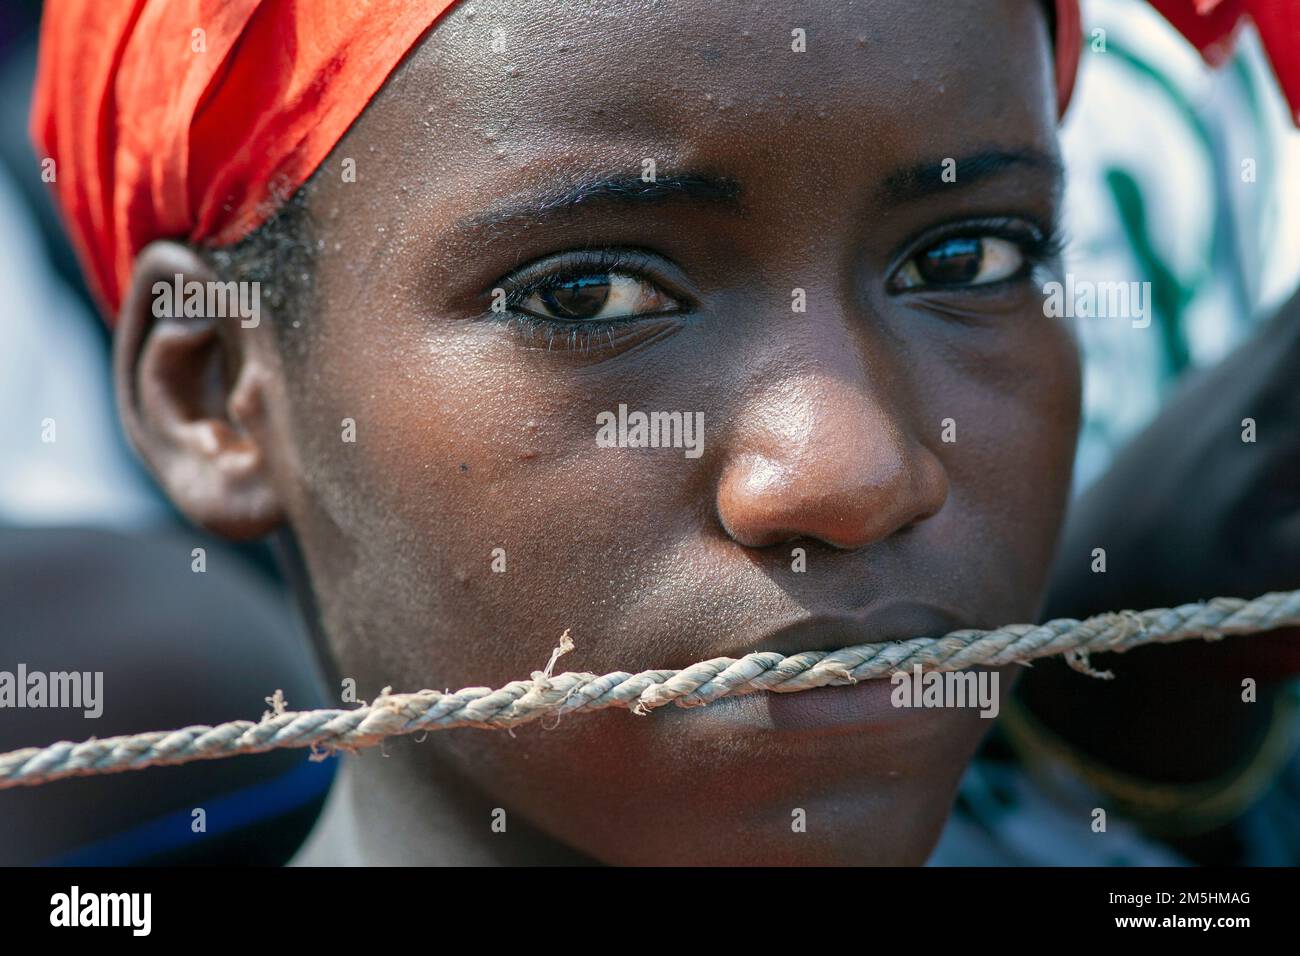 Gros plan portrait d'une jeune fille avec une corde au-dessus de sa bouche étant réduite au silence Banque D'Images